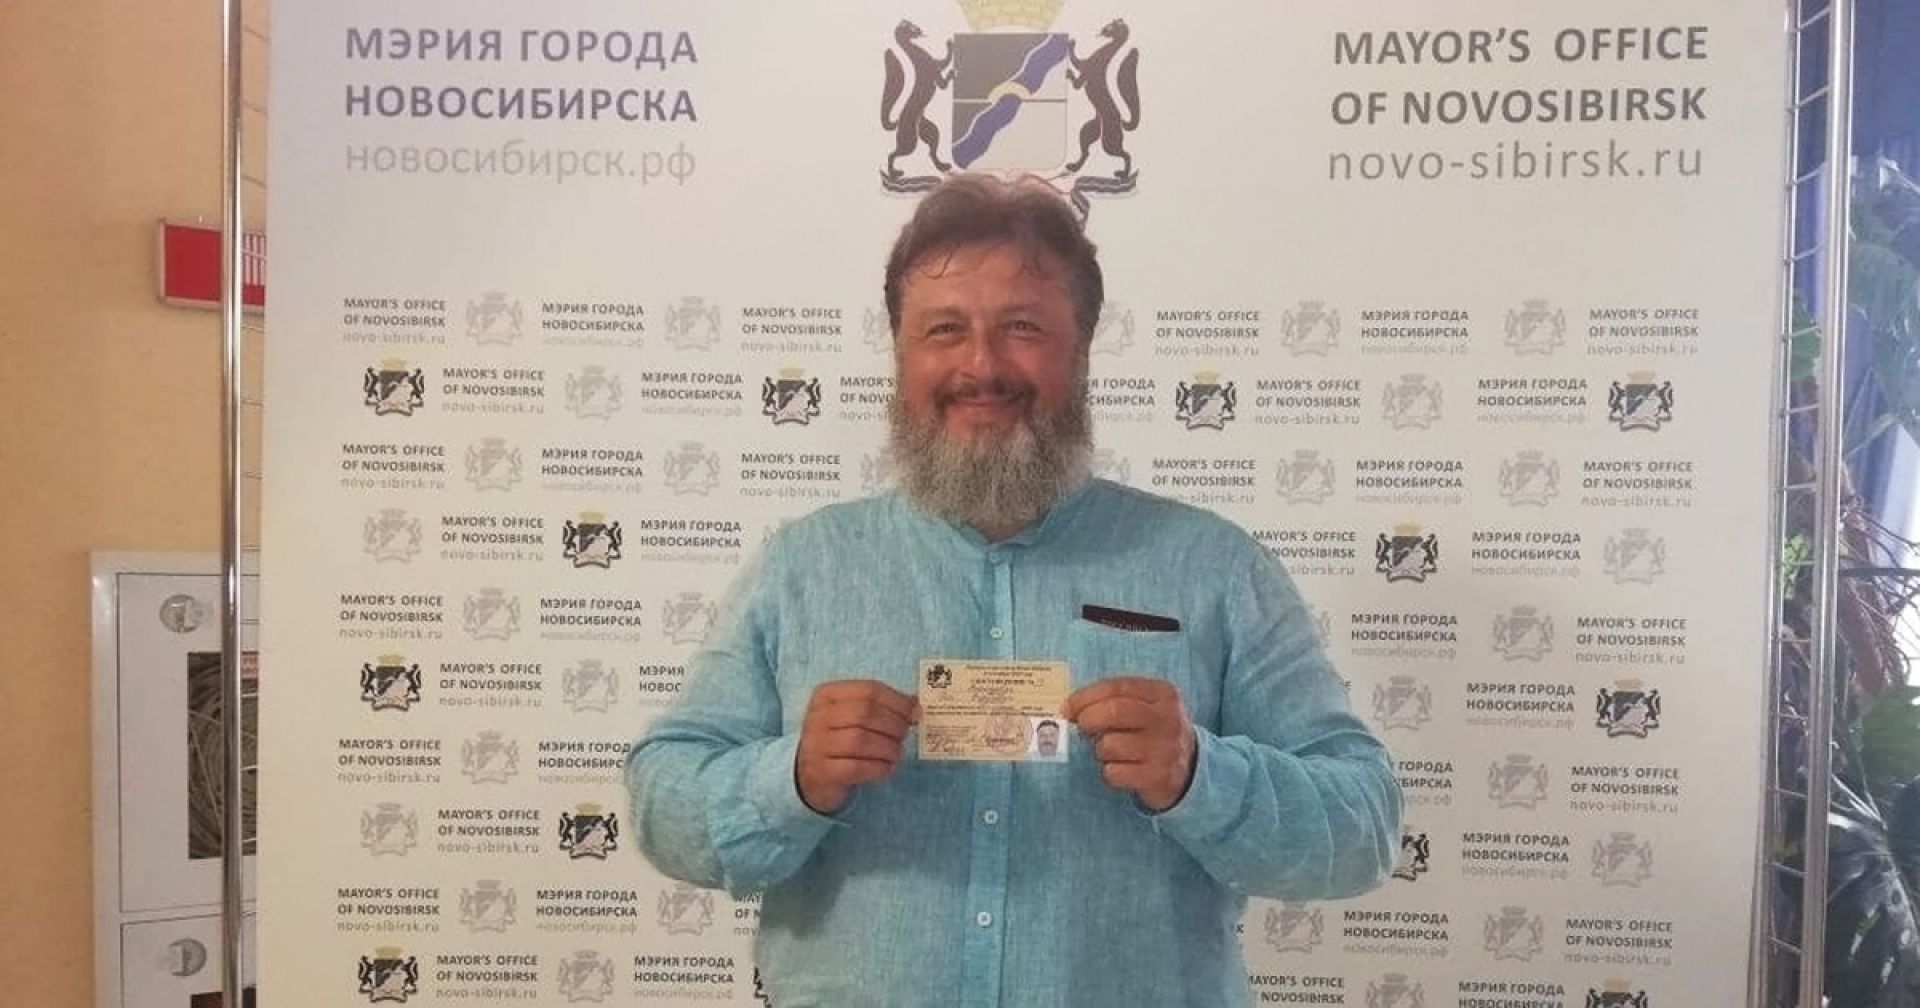 Олег Викторович Новосибирск